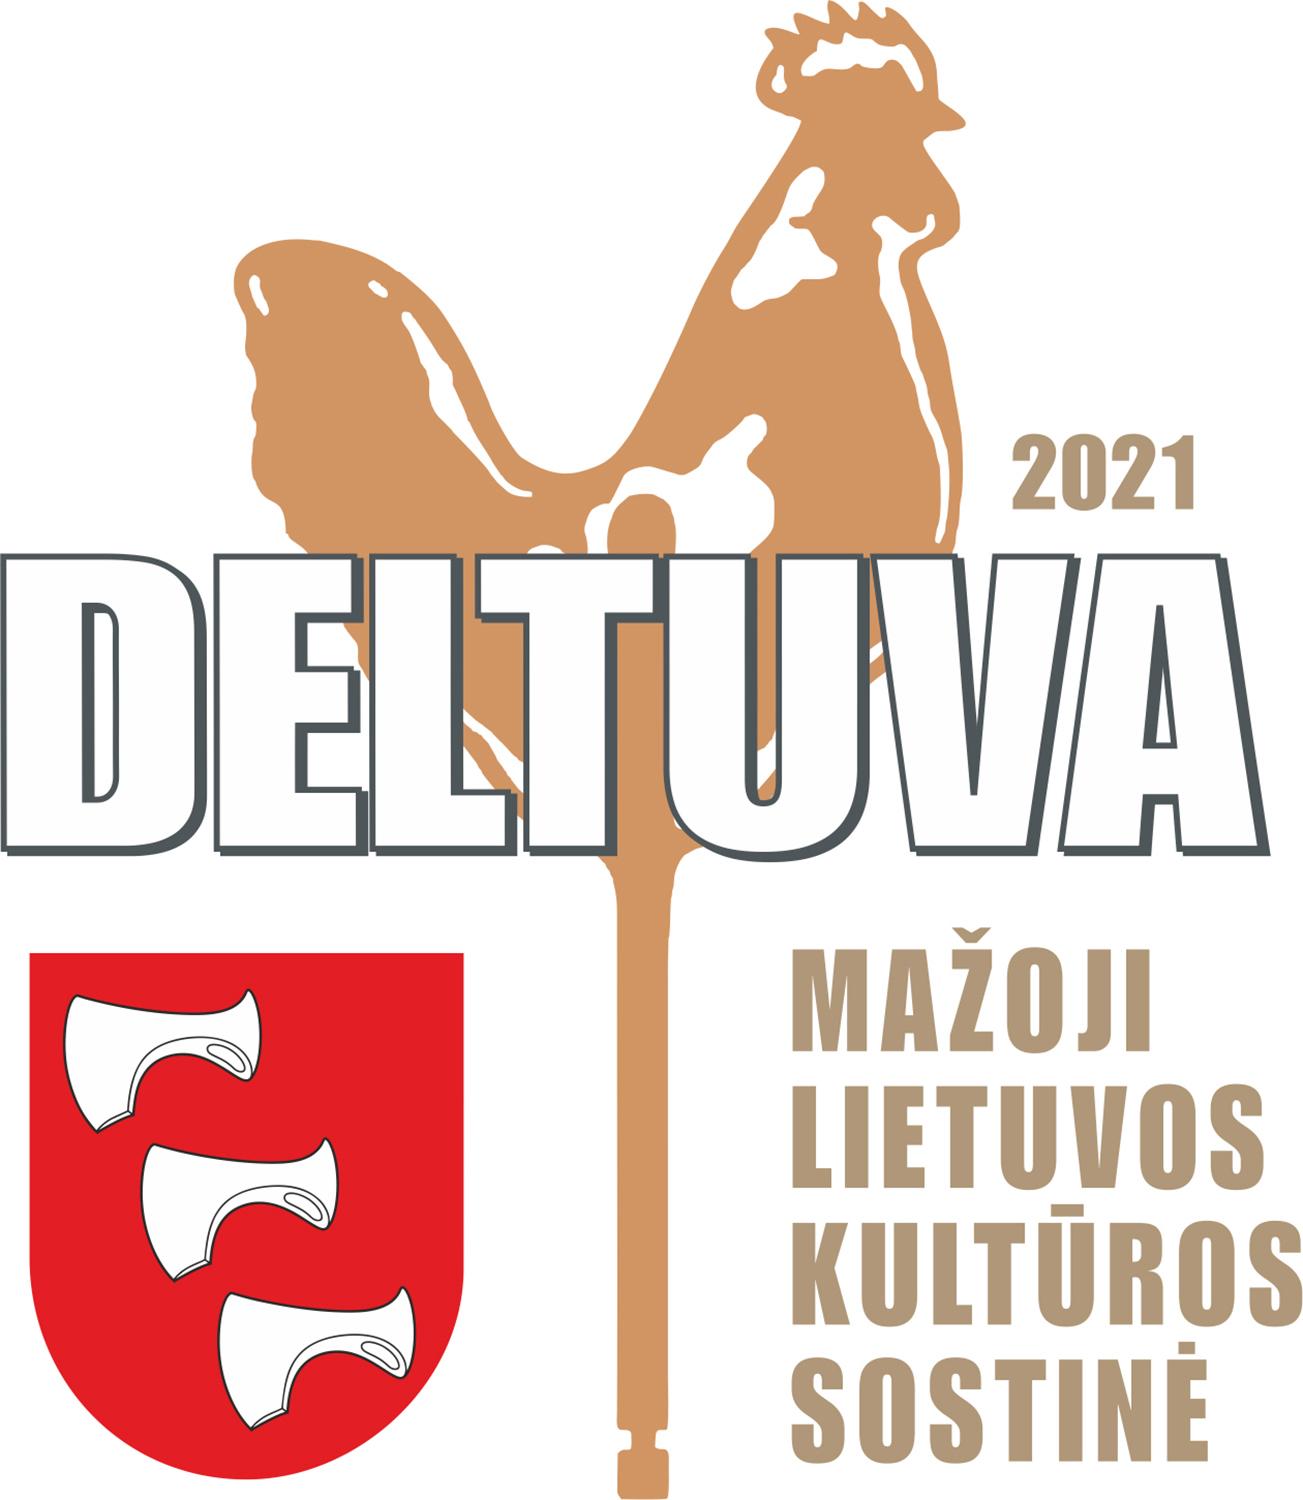 Mažosios kultūros sostinės programa susitraukė / Deltuva tapo Lietuvos mažąja kultūros sostine.